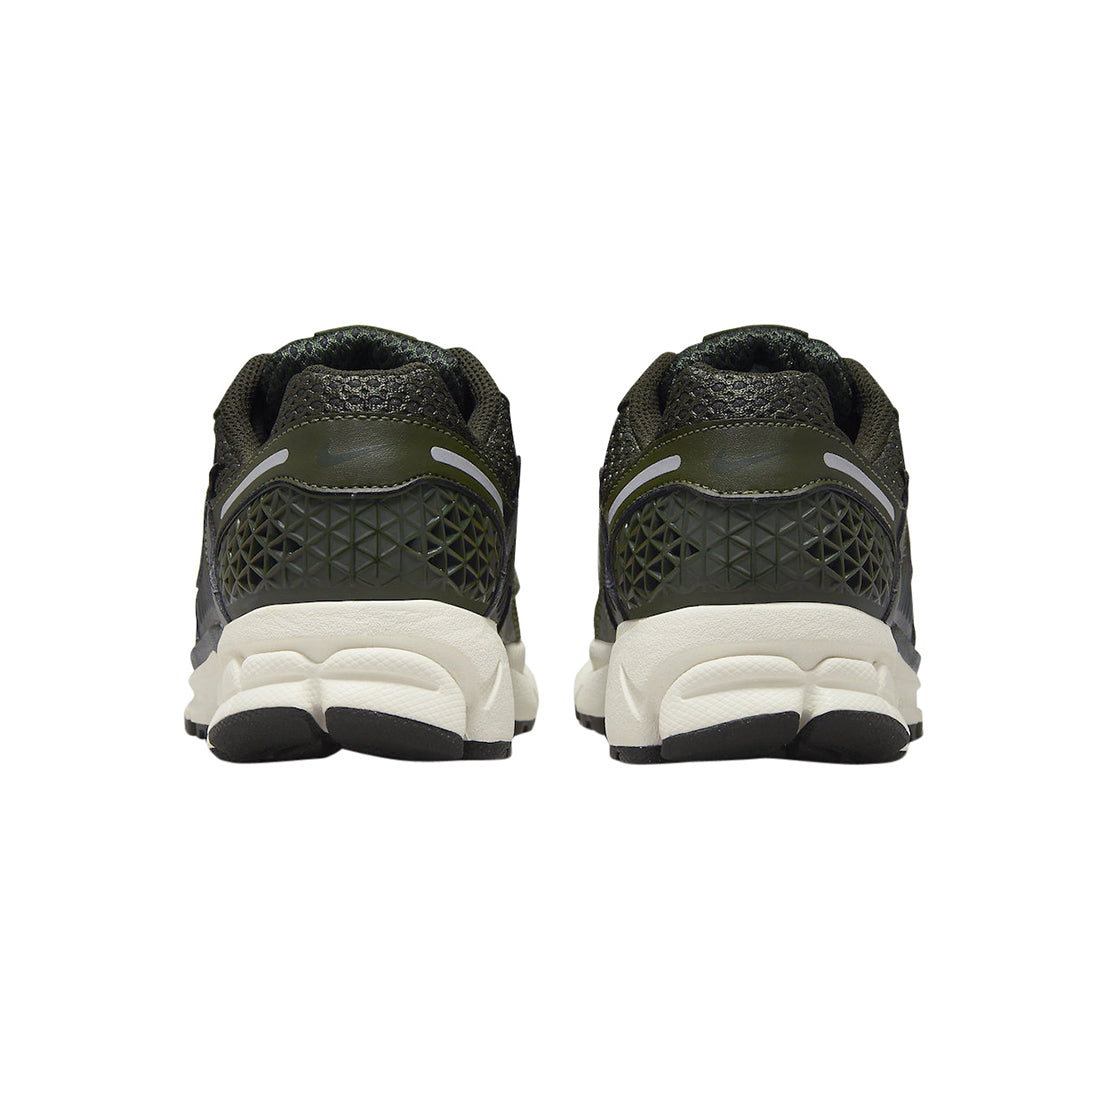 W Nike Zoom Vomero 5 K - Cargo Khaki/Sequoia/Sail/Mtlc Silver